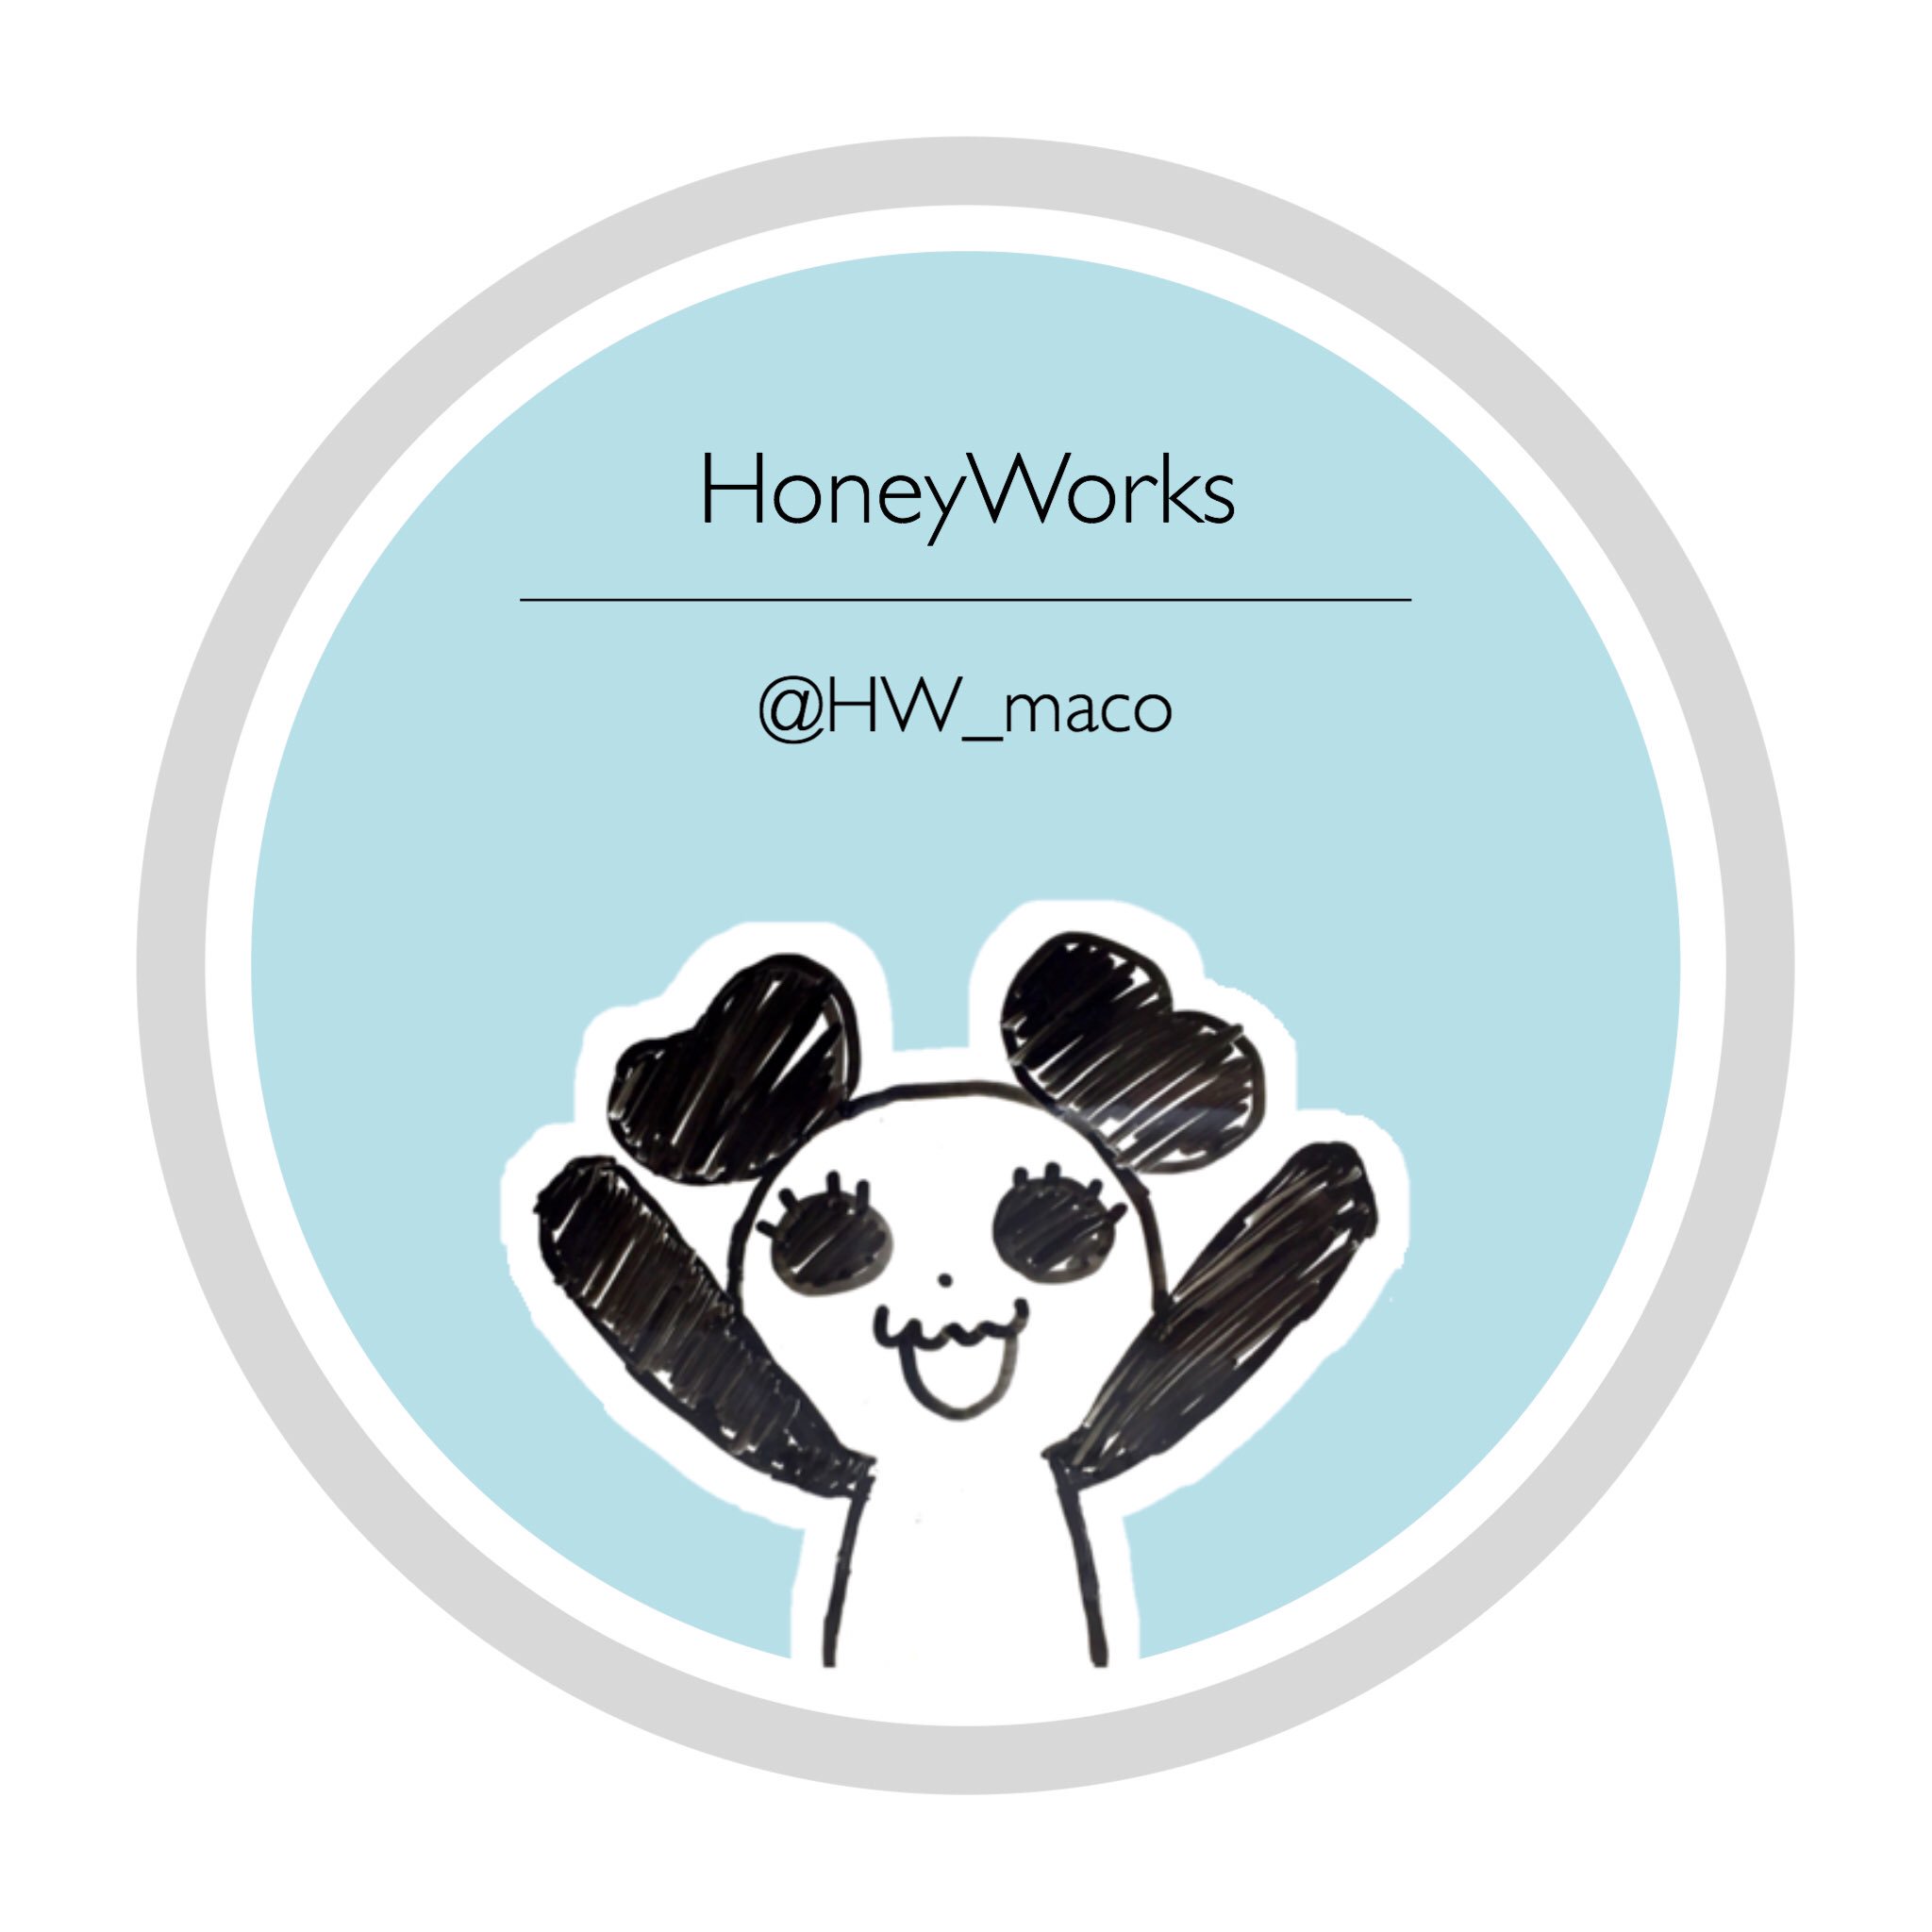 Maco Honeyworks この自作アイコンのことで 画像にhoneyworksって入れるのも パンダのイラストも Honeyworksを象徴するから良くないと指摘されてしまったのですがそこまでダメなのかな T Co Mvrcqpvg8q Twitter